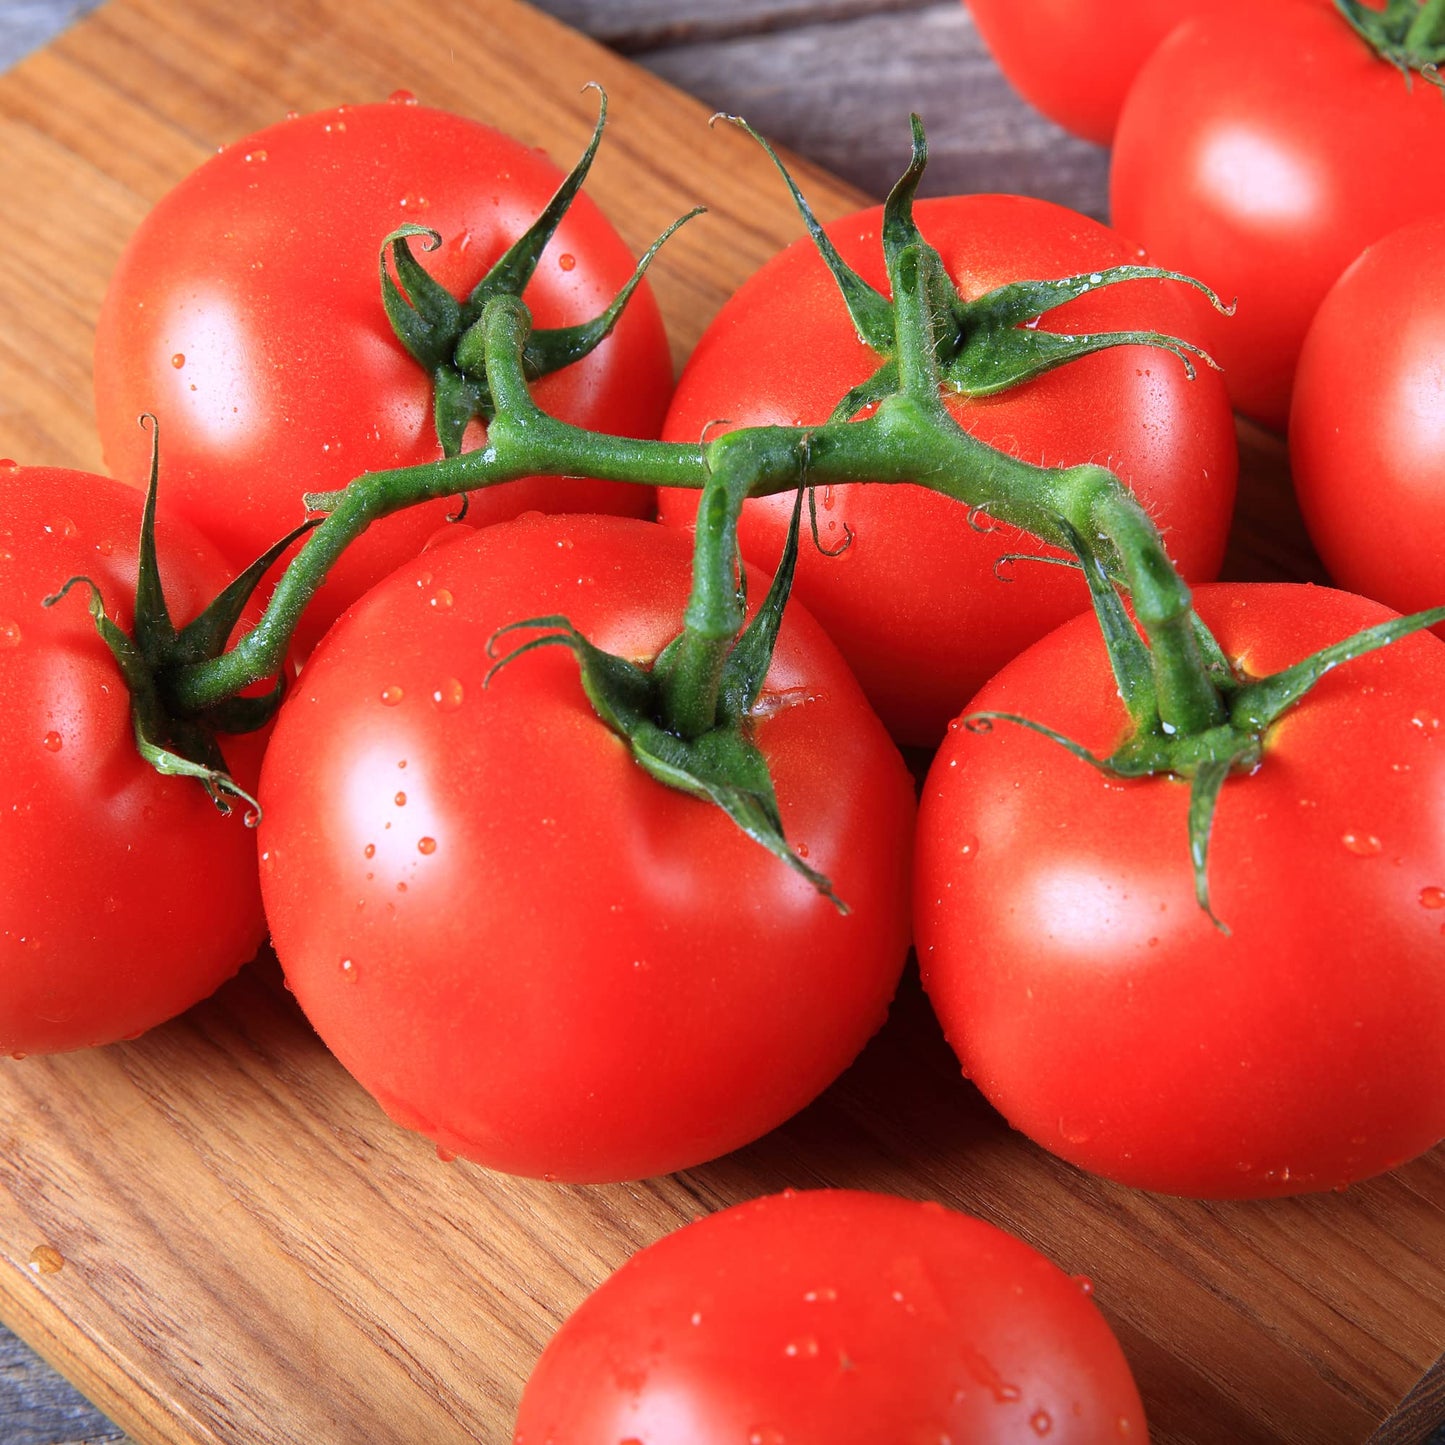 Tomato Plants - Gardener's Mixed Selection - 'Tumbling Tom' + 'Gardener's Delight' + 'Sweet Million' - 2 + 2 + 2 Plug Plant Package - 6 x Plants